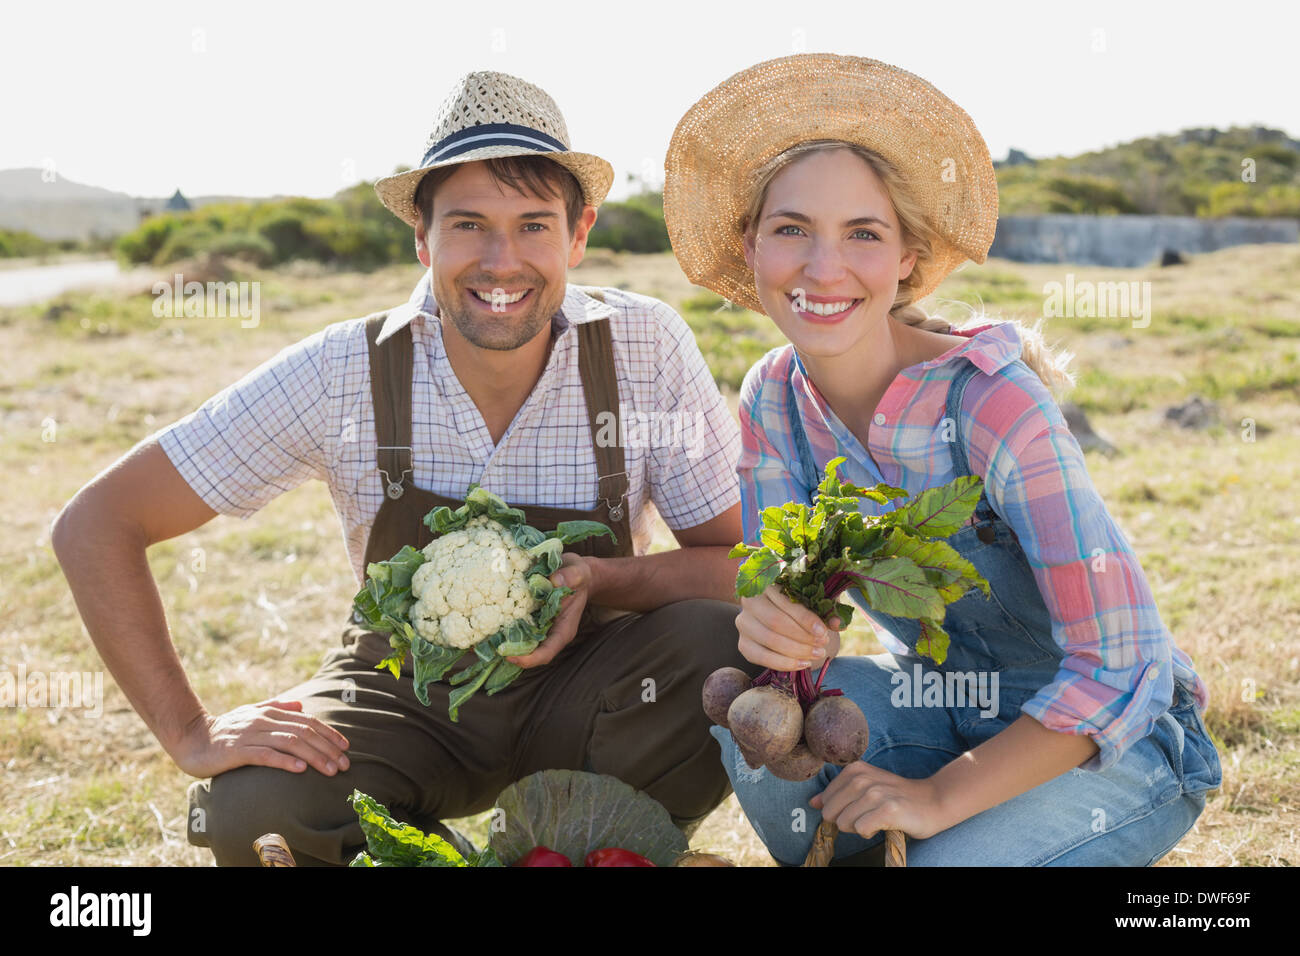 Smiling couple avec des légumes frais dans le champ Banque D'Images